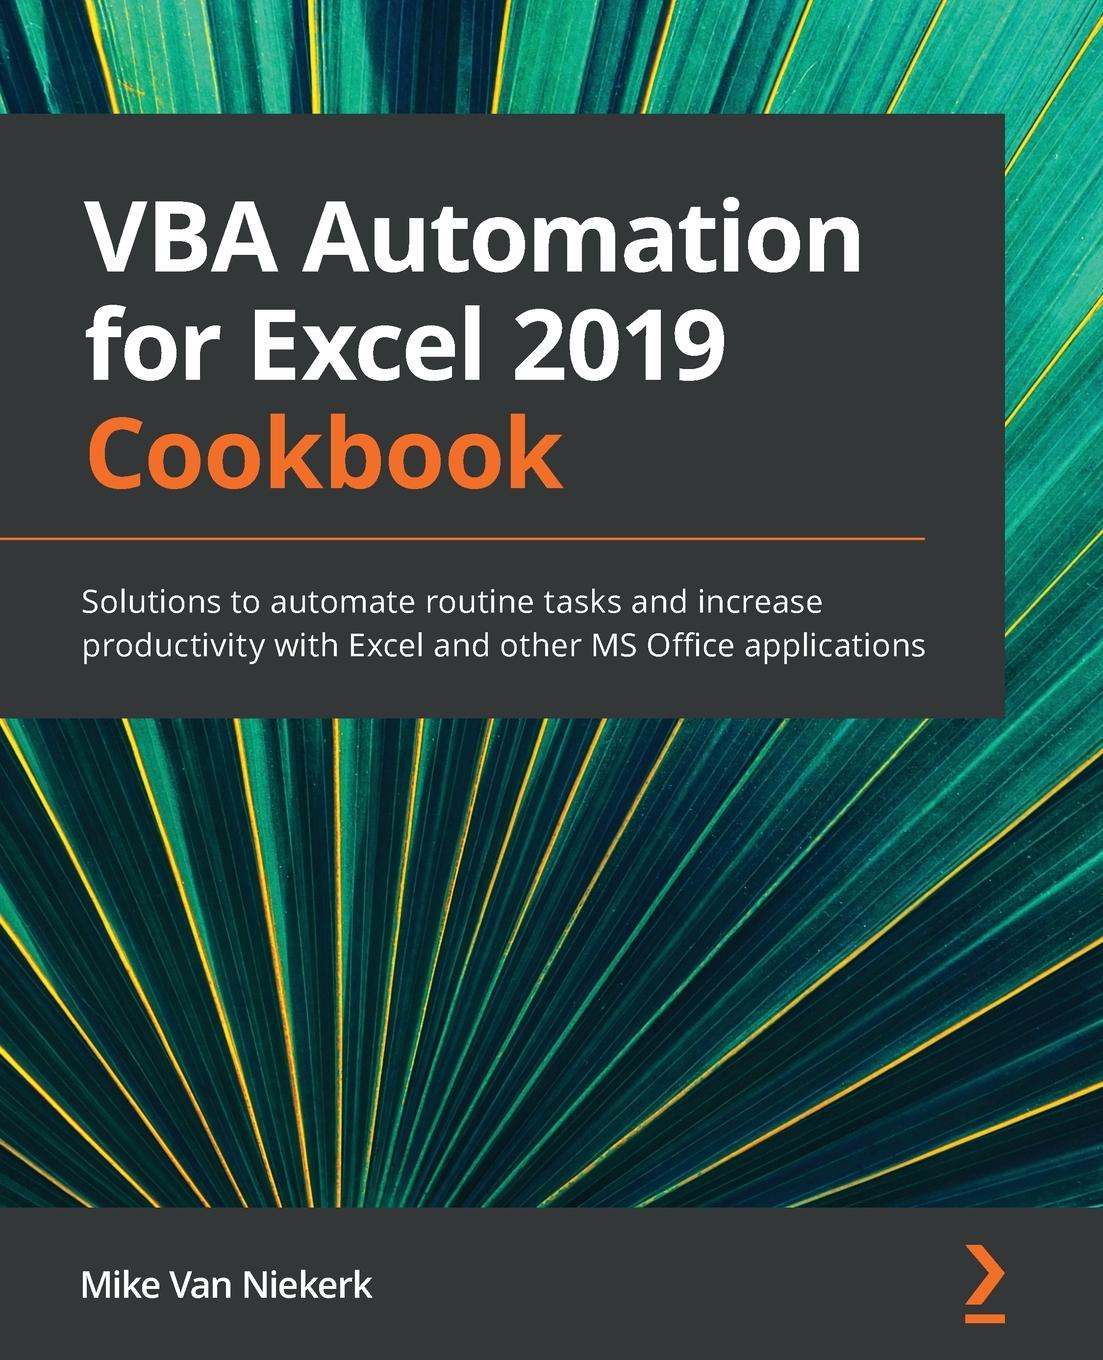 Carte VBA Automation for Excel 2019 Cookbook Mike Van Niekerk